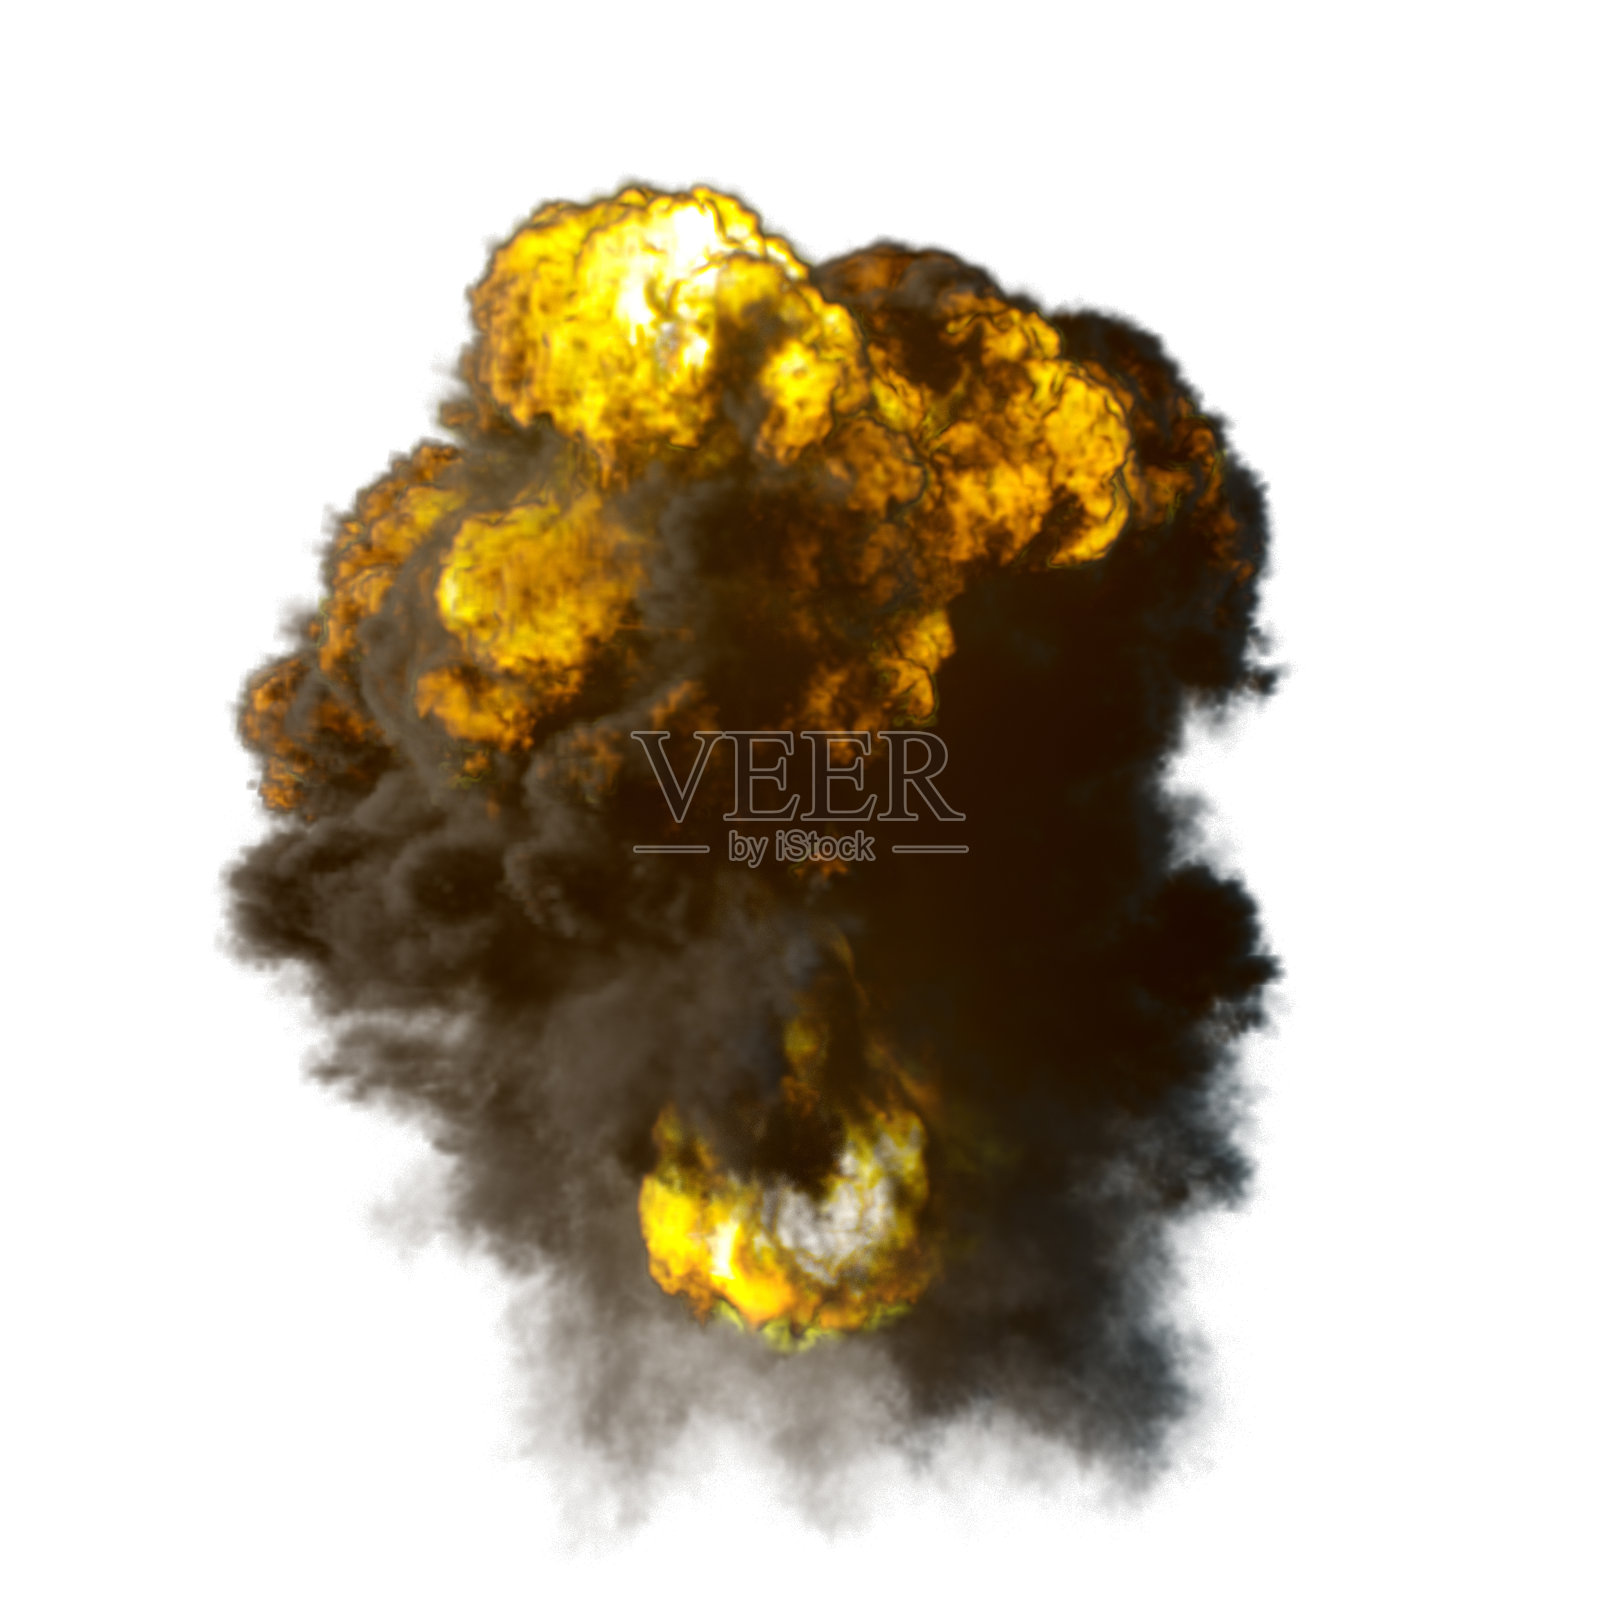 爆炸蘑菇形状的云与火和烟的插图照片摄影图片